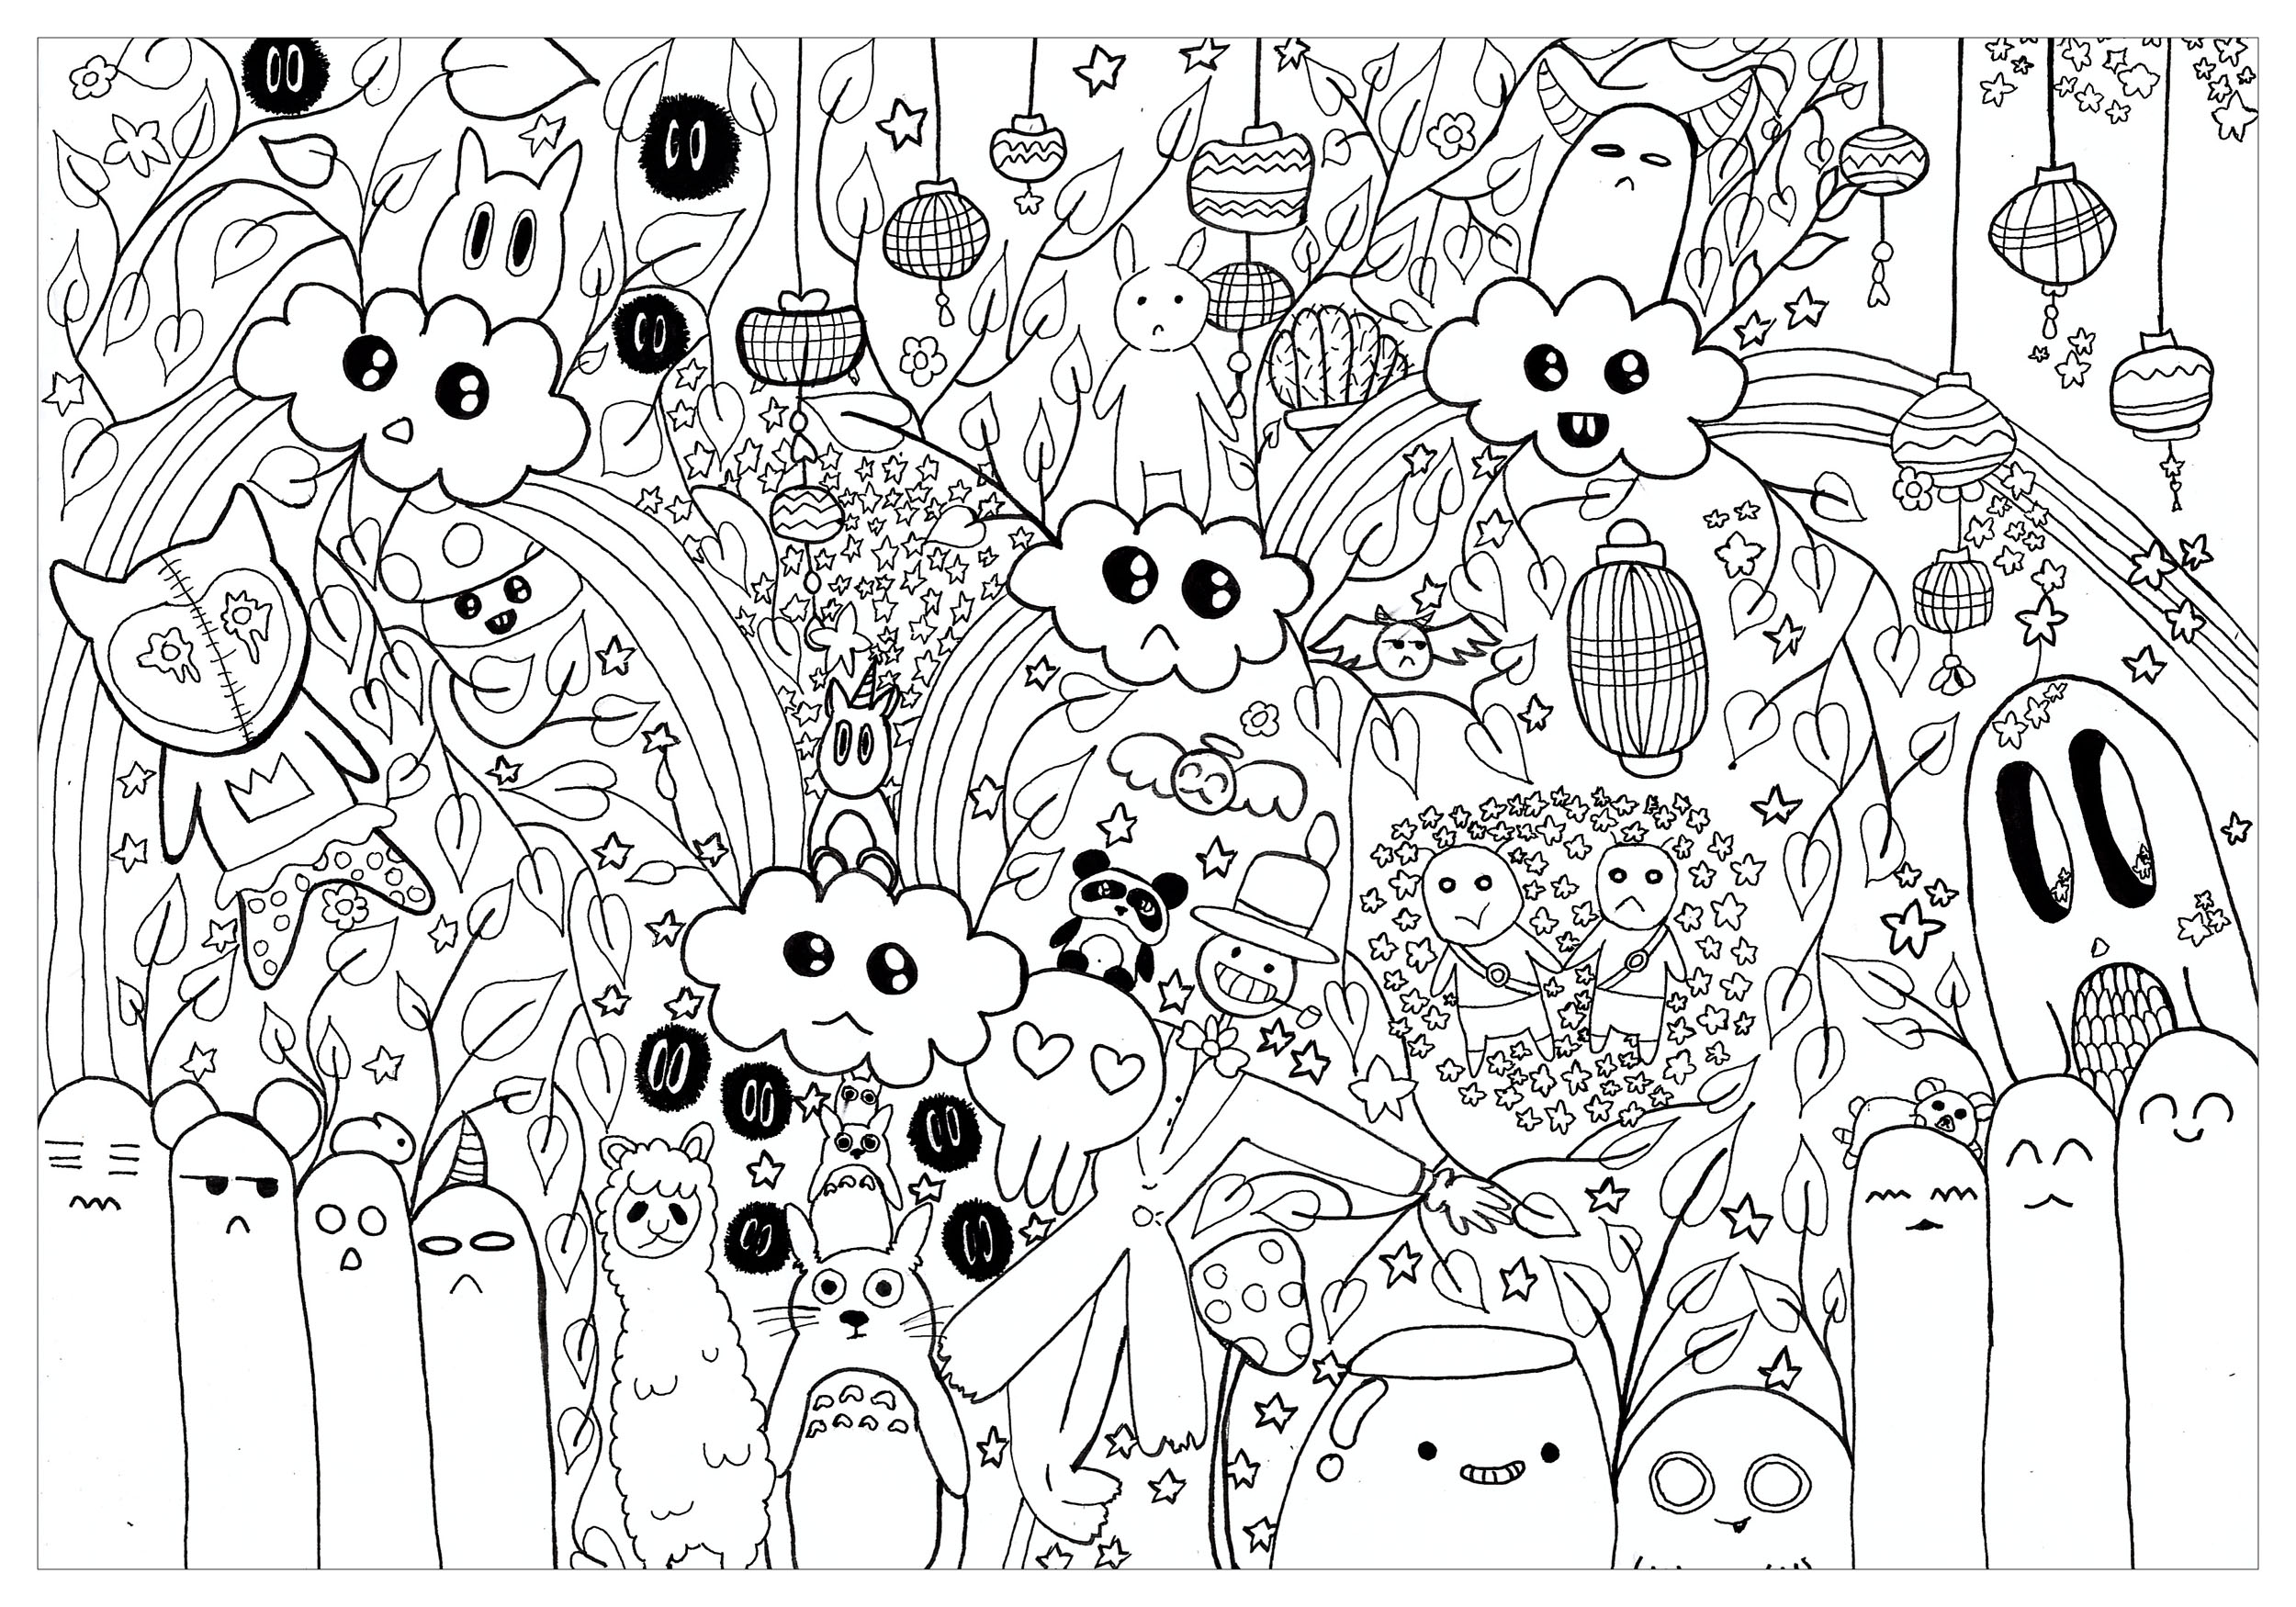  Arte kawaii incrível - Livro de colorir - Desenhos